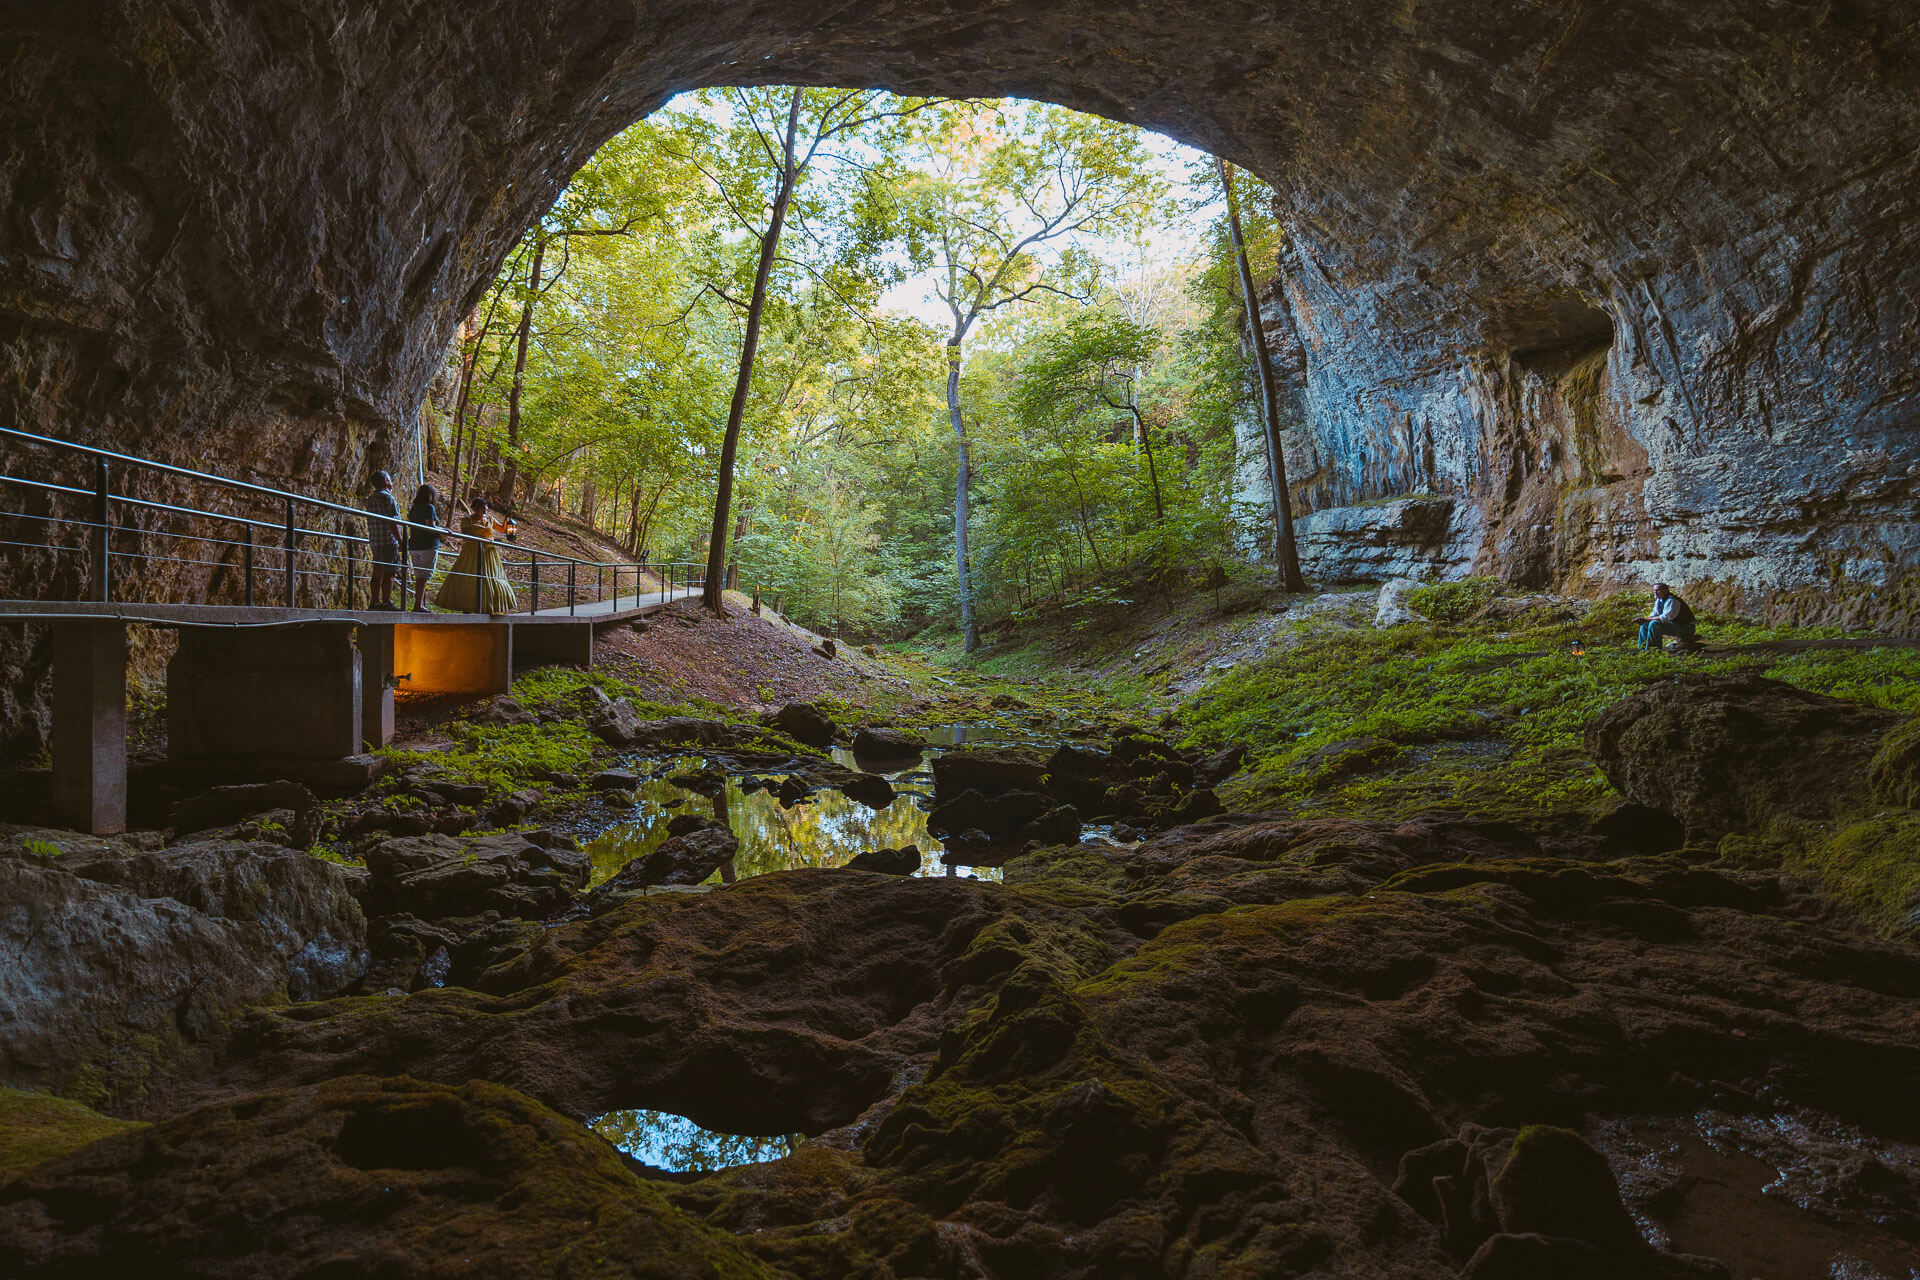 Smallin Civil War Cave is a historic site in Missouri